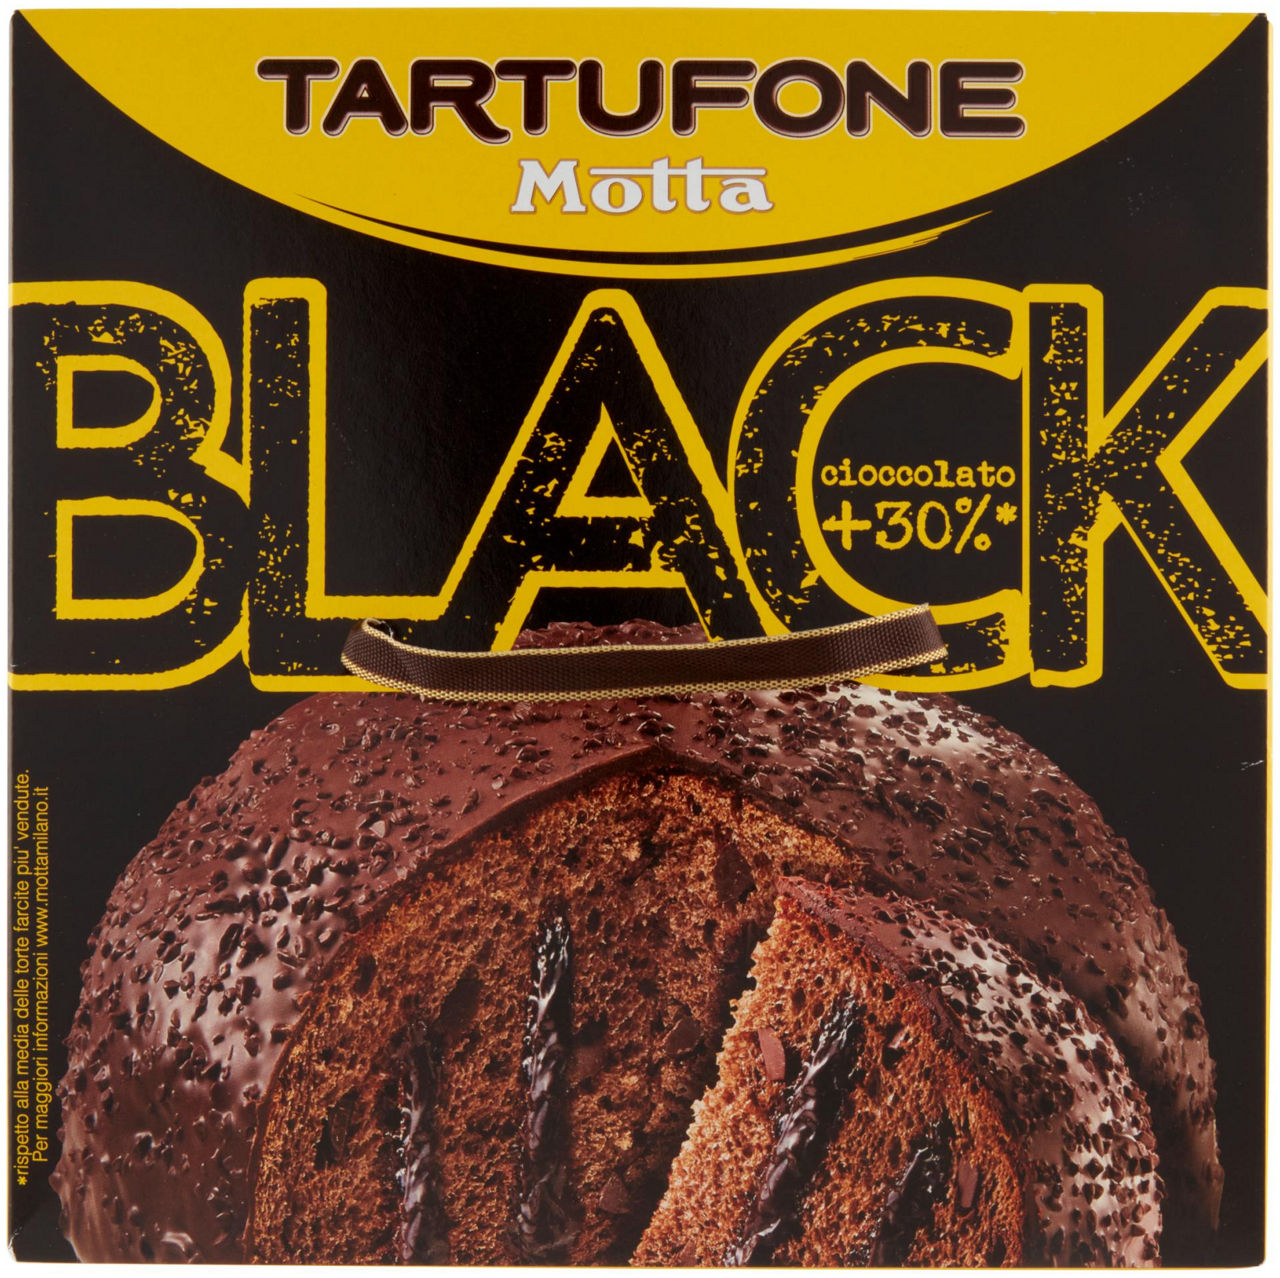 IL TARTUFONE BLACK MOTTA G 750 - 4